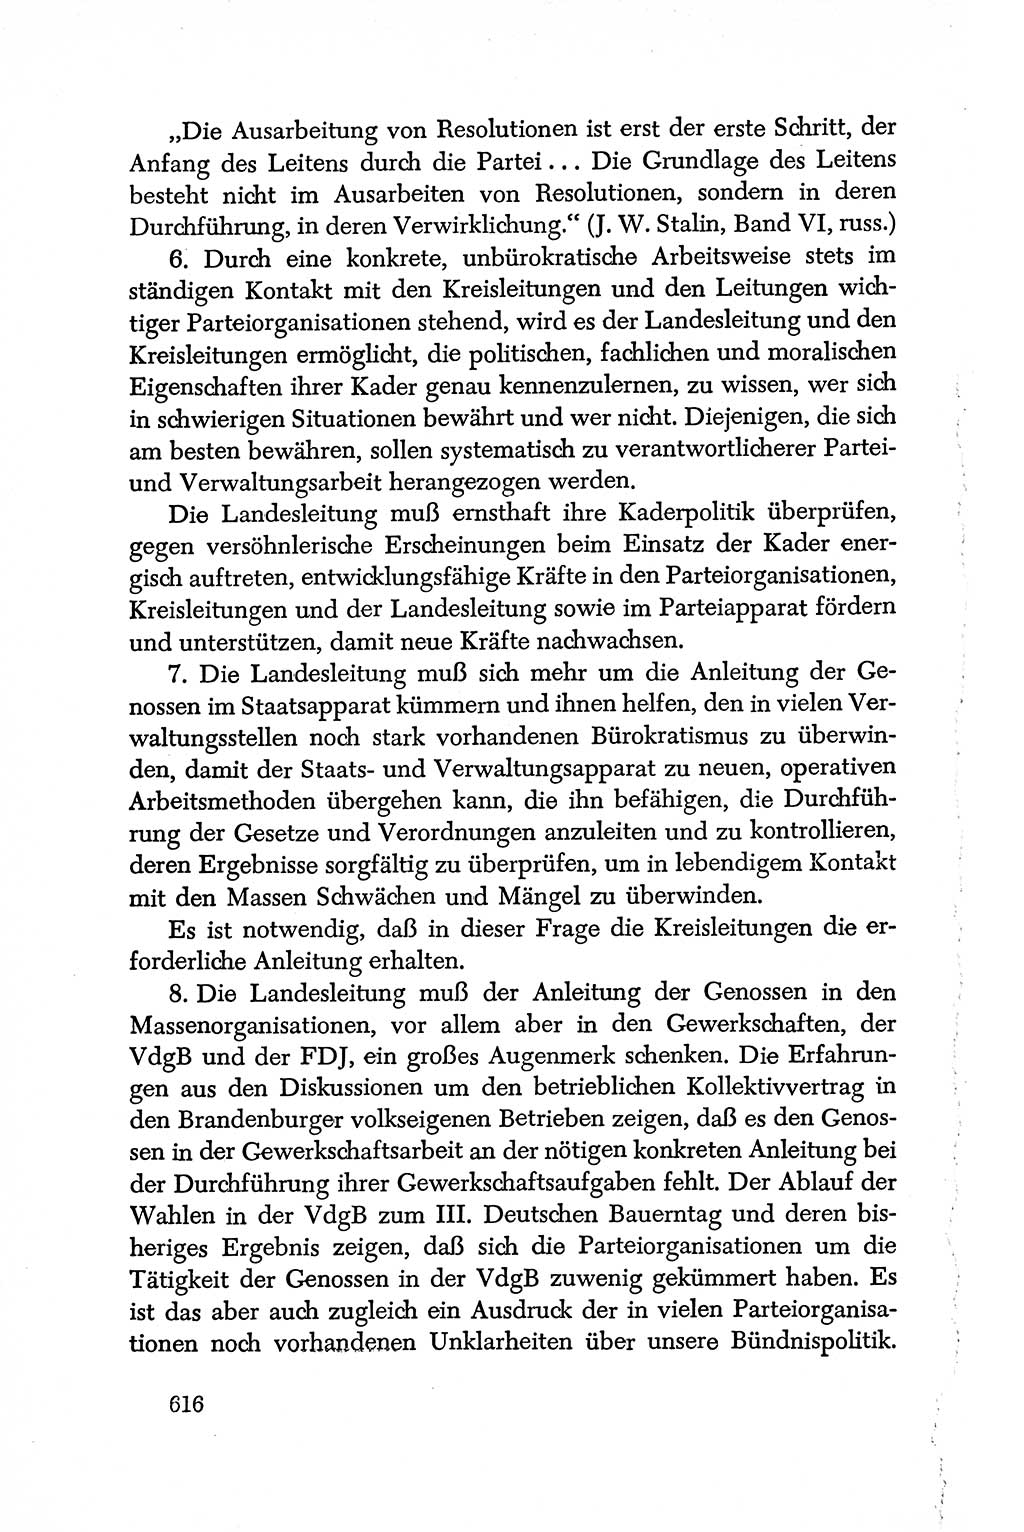 Dokumente der Sozialistischen Einheitspartei Deutschlands (SED) [Deutsche Demokratische Republik (DDR)] 1950-1952, Seite 616 (Dok. SED DDR 1950-1952, S. 616)